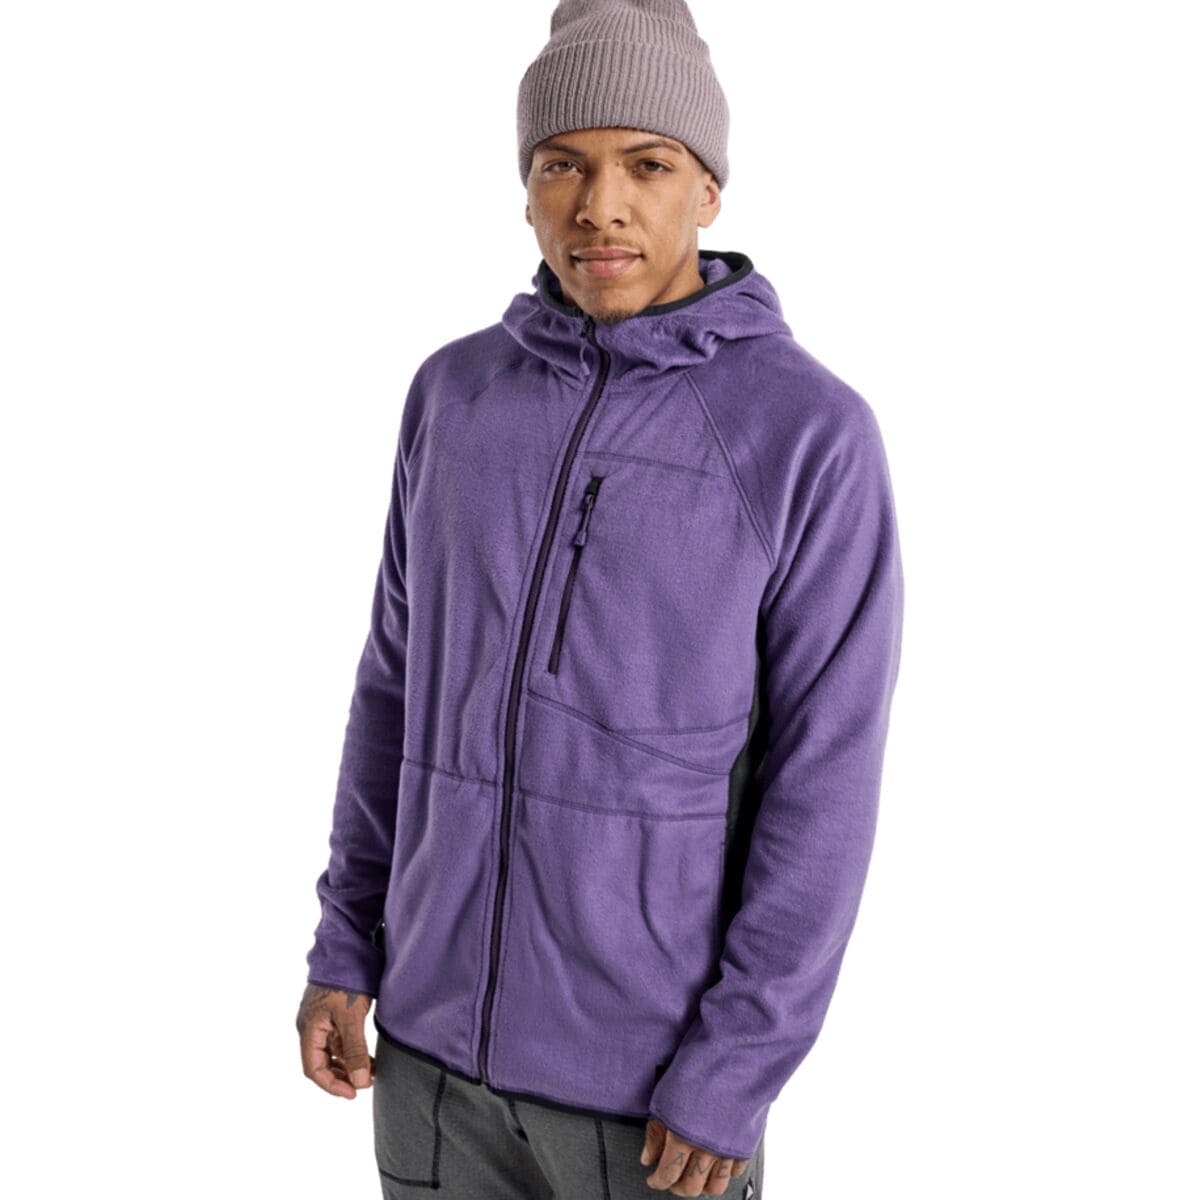 Stockrun Warmest Hooded Full-Zip Fleece Jacket - Men